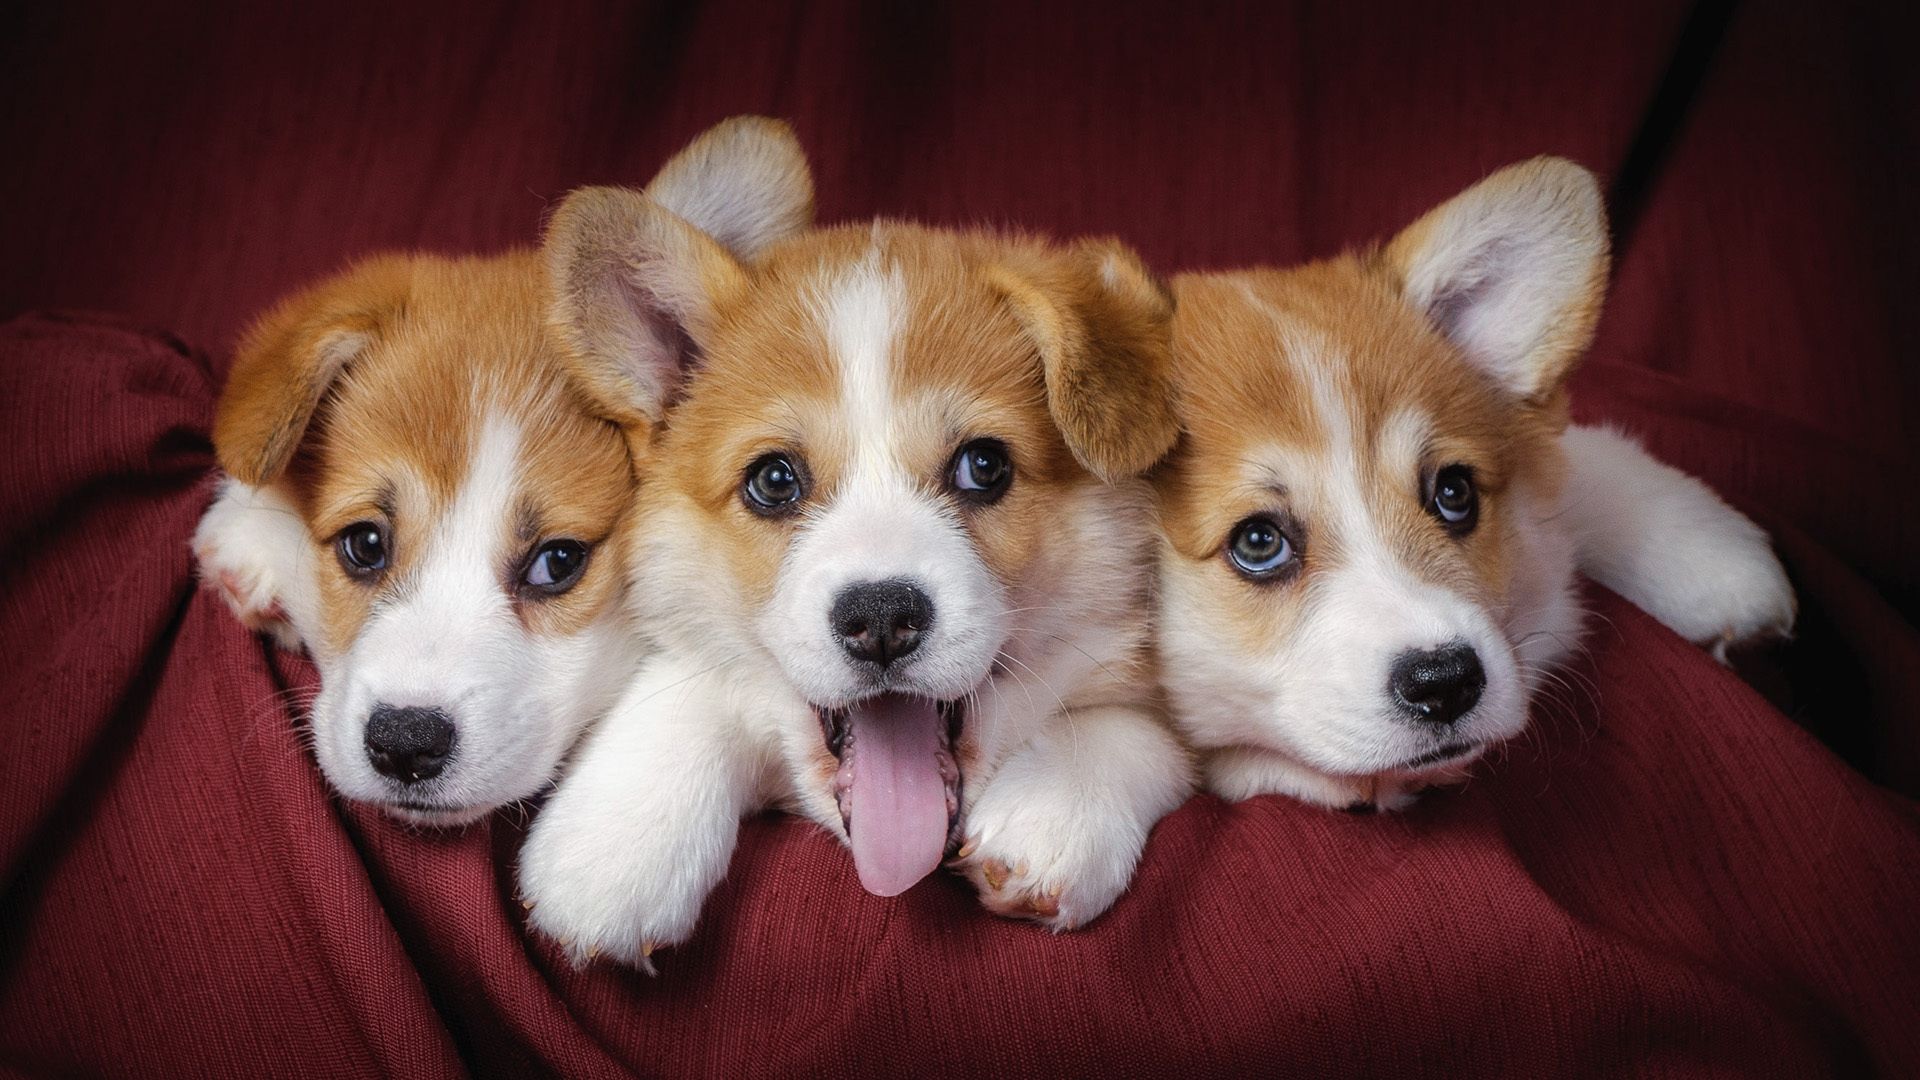 Cute dogs wallpaper